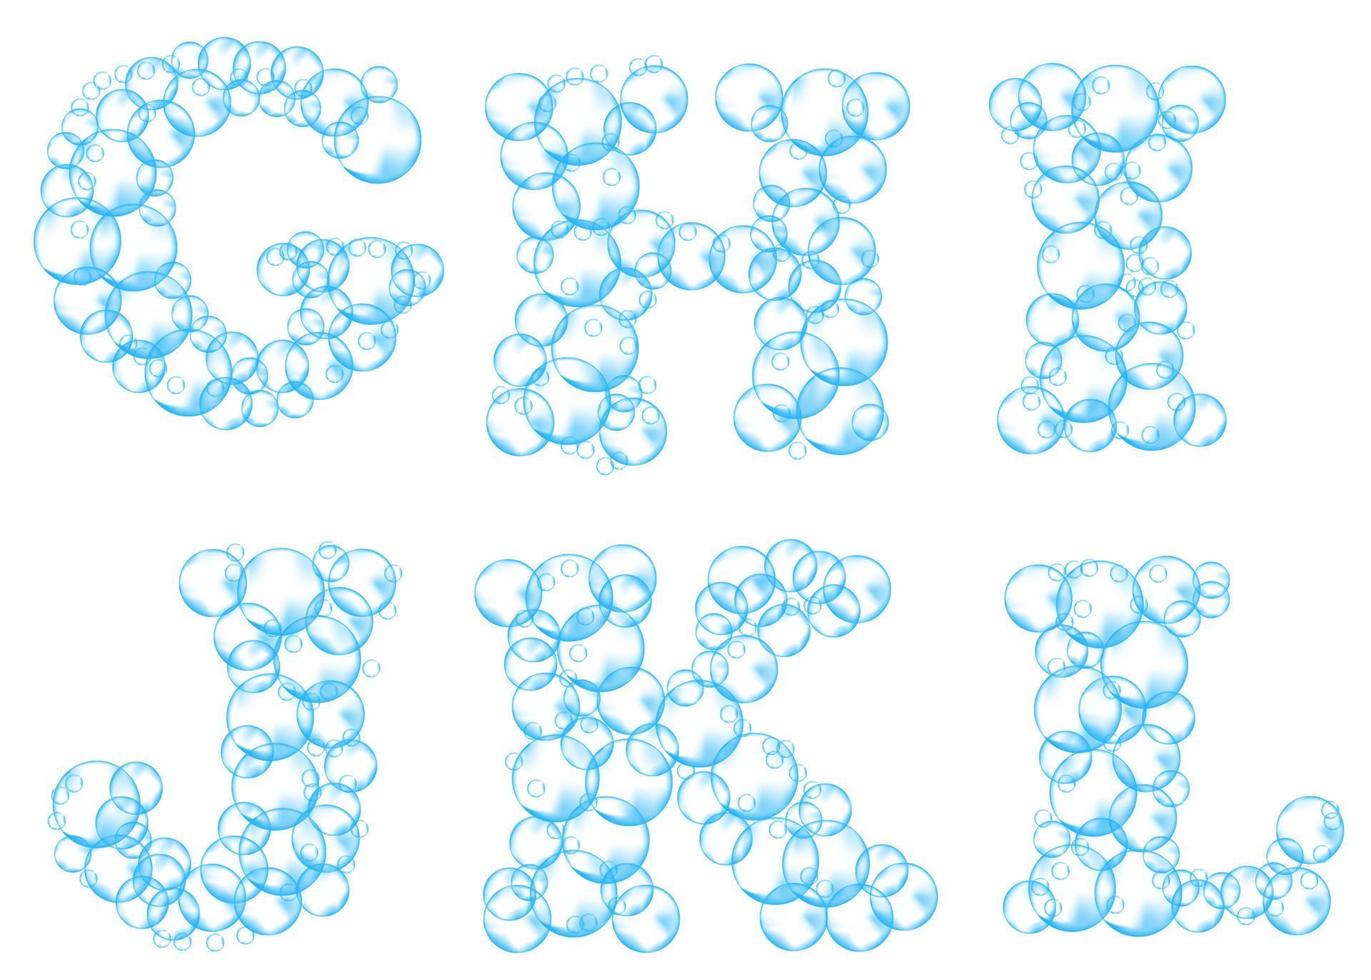 alfabeto de bolhas de sabão. água espuma letras g, h, i, j, k, l. fonte de vetor realista isolada no fundo branco